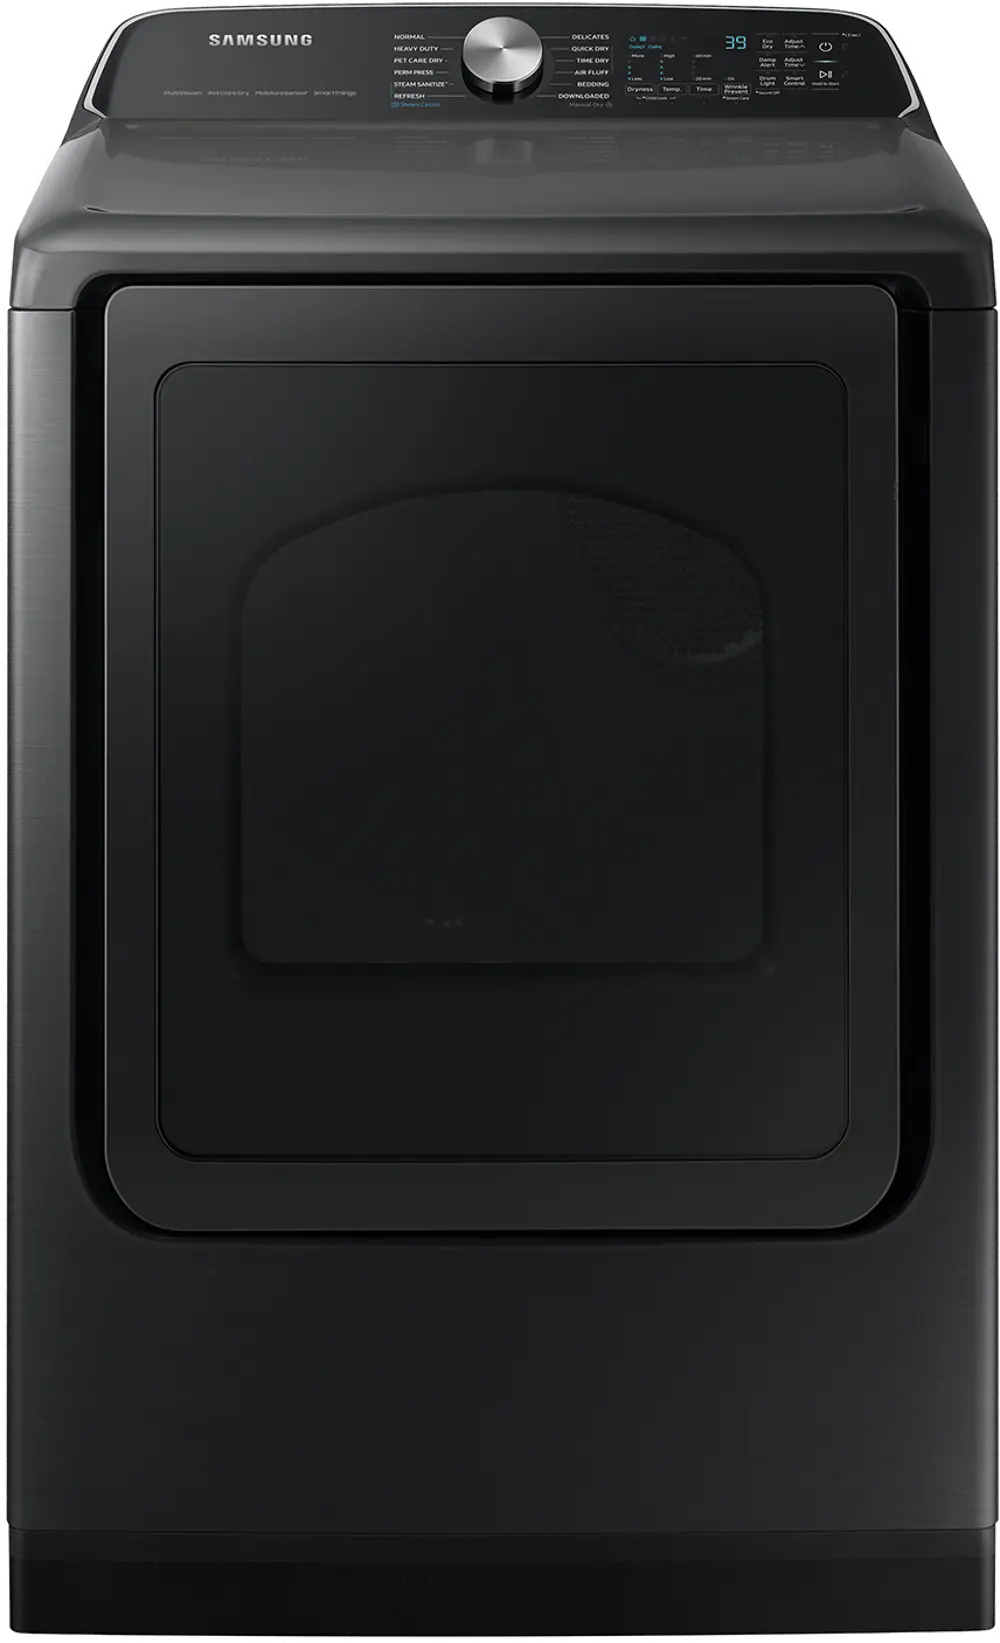 DVE55CG7100V Samsung 7.4 Cu Ft Electric Dryer - Black-1